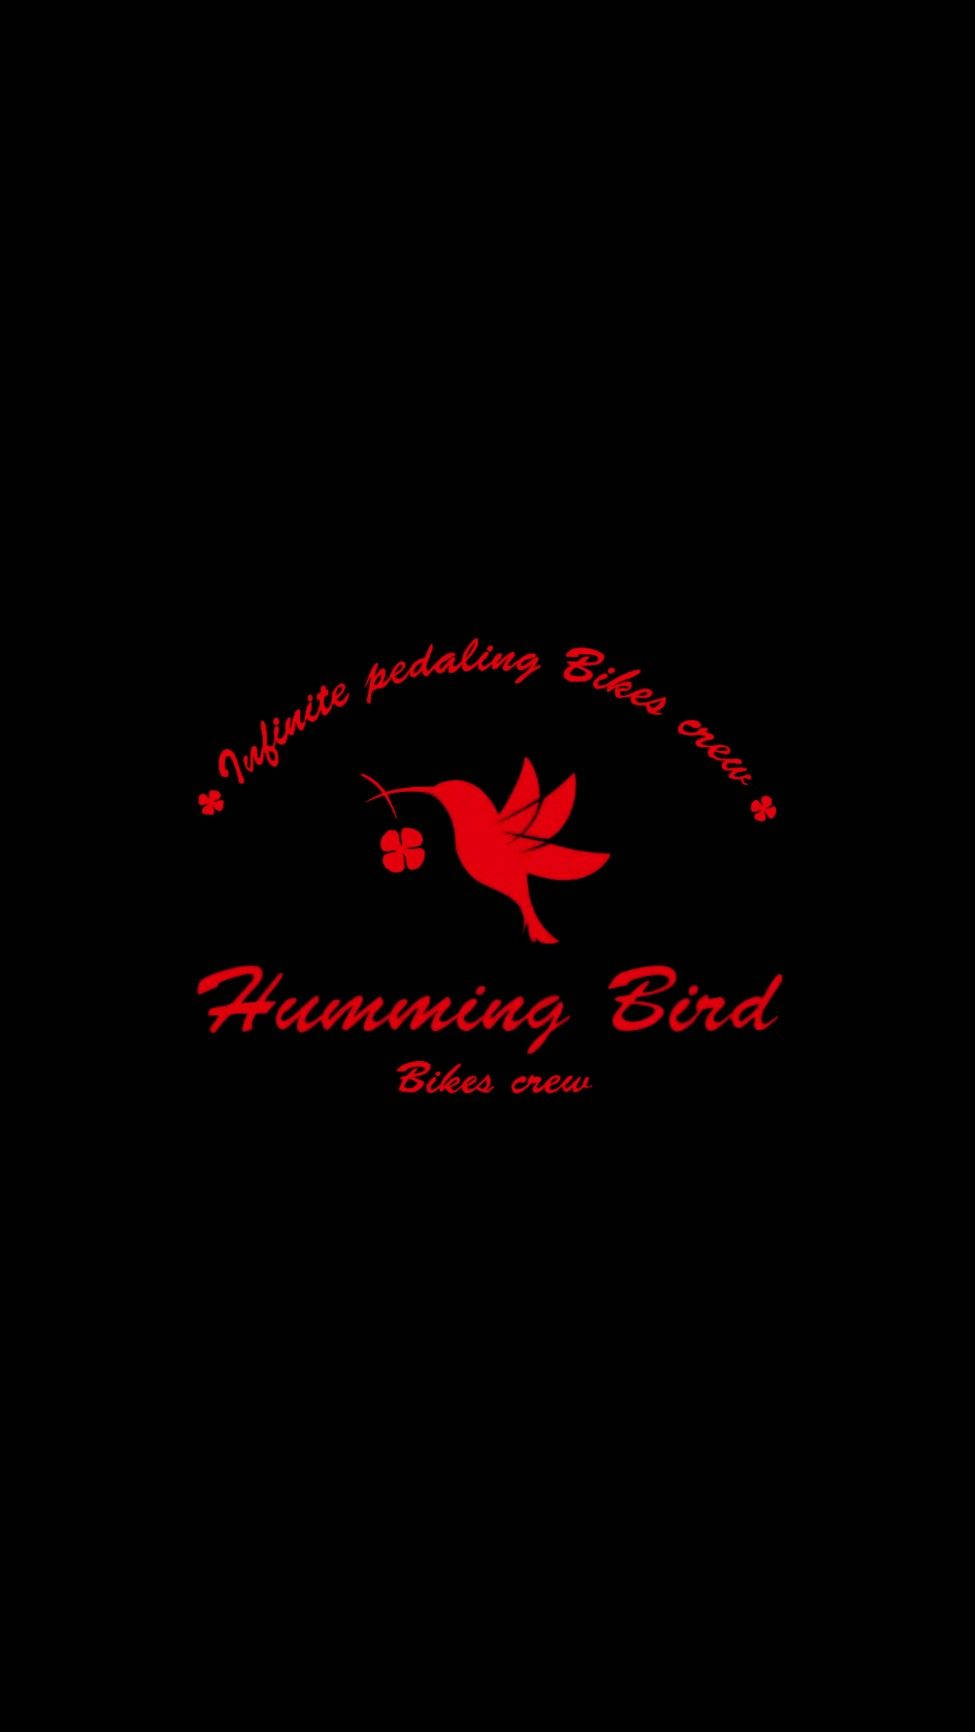 Wind Breaker Humming Bird Logo